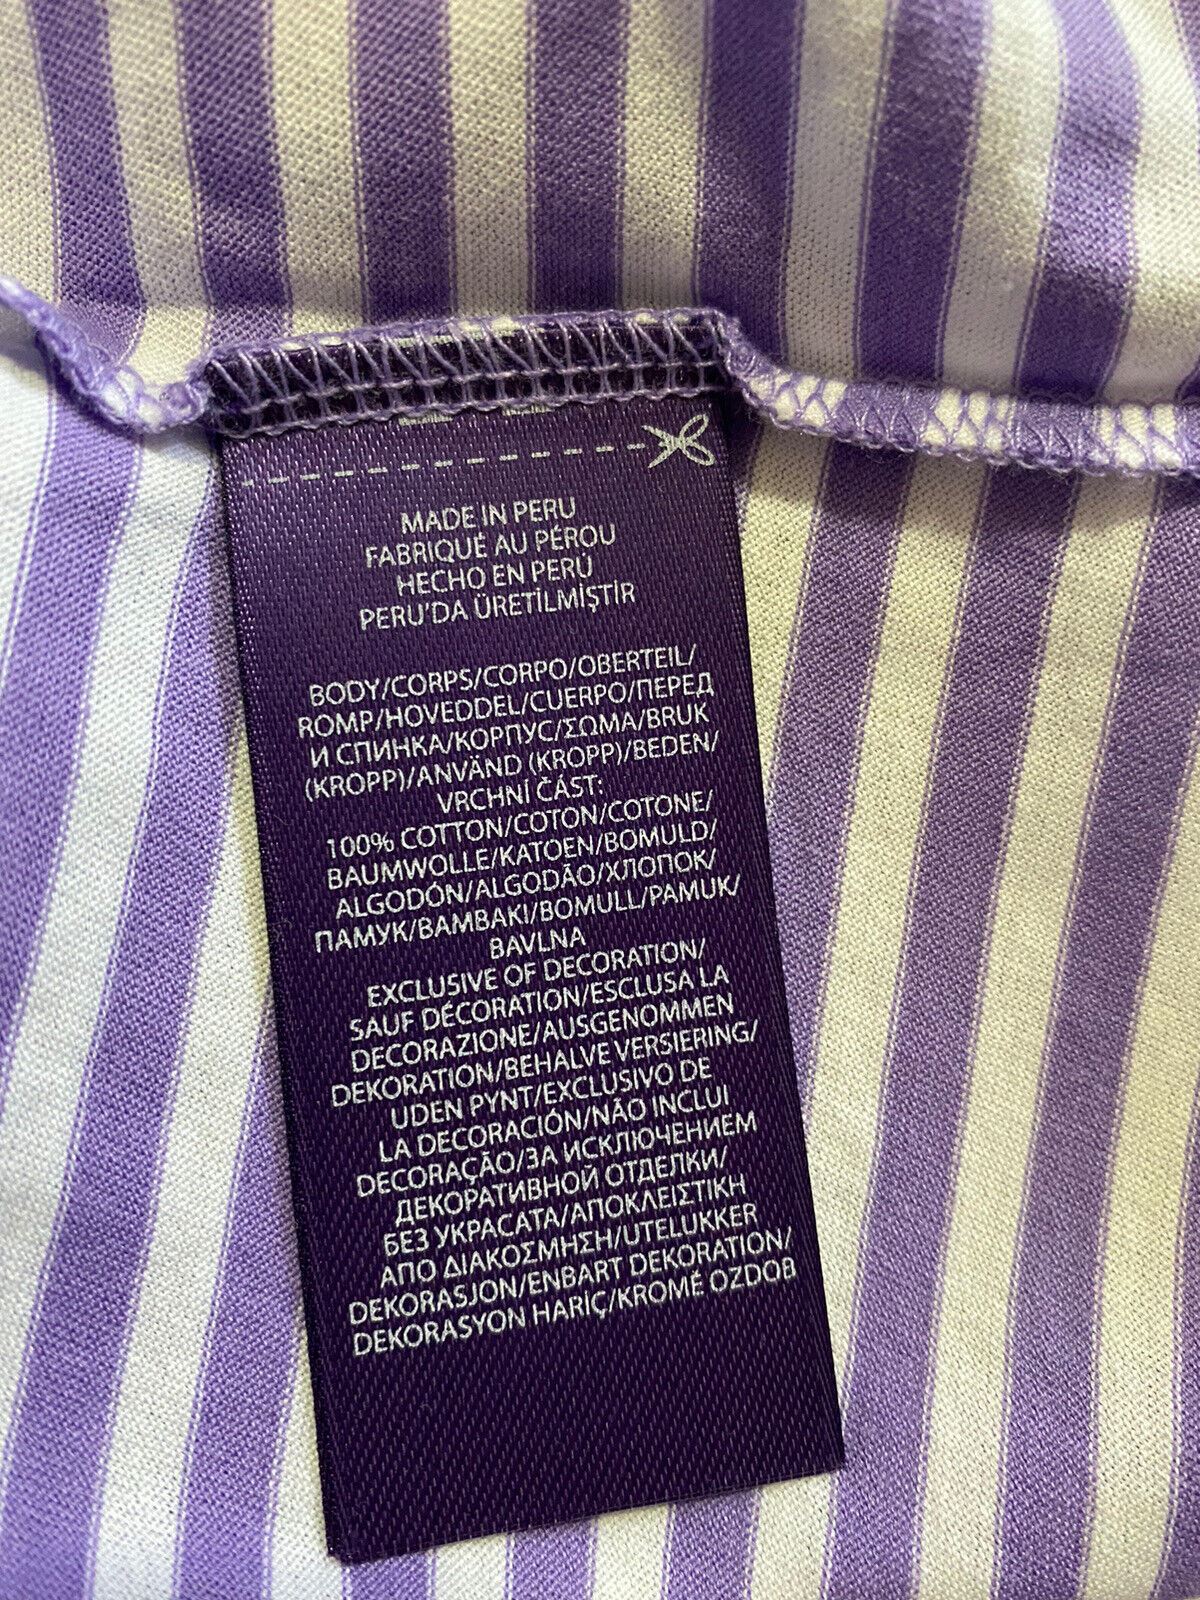 Neu mit Etikett: Ralph Lauren Purple Label Herren-Baumwoll-T-Shirt, Lila/Weiß, S, Italien